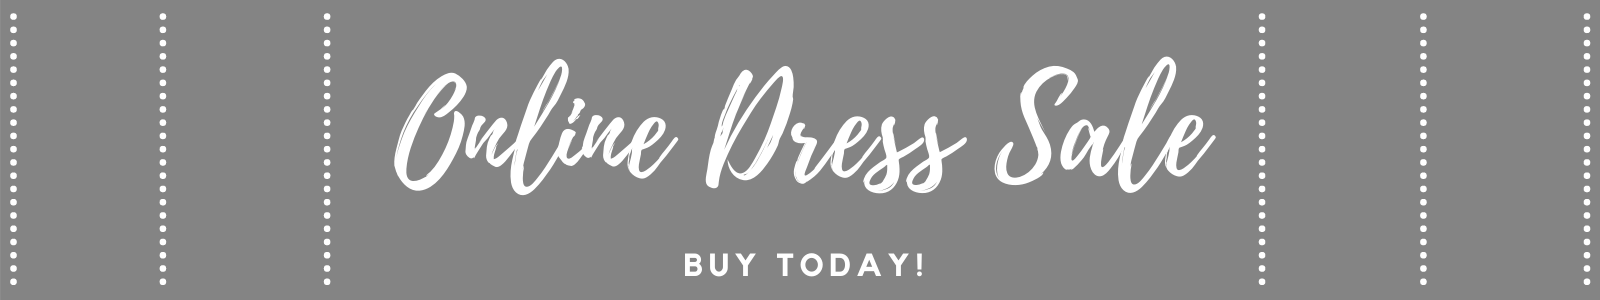 dress sale